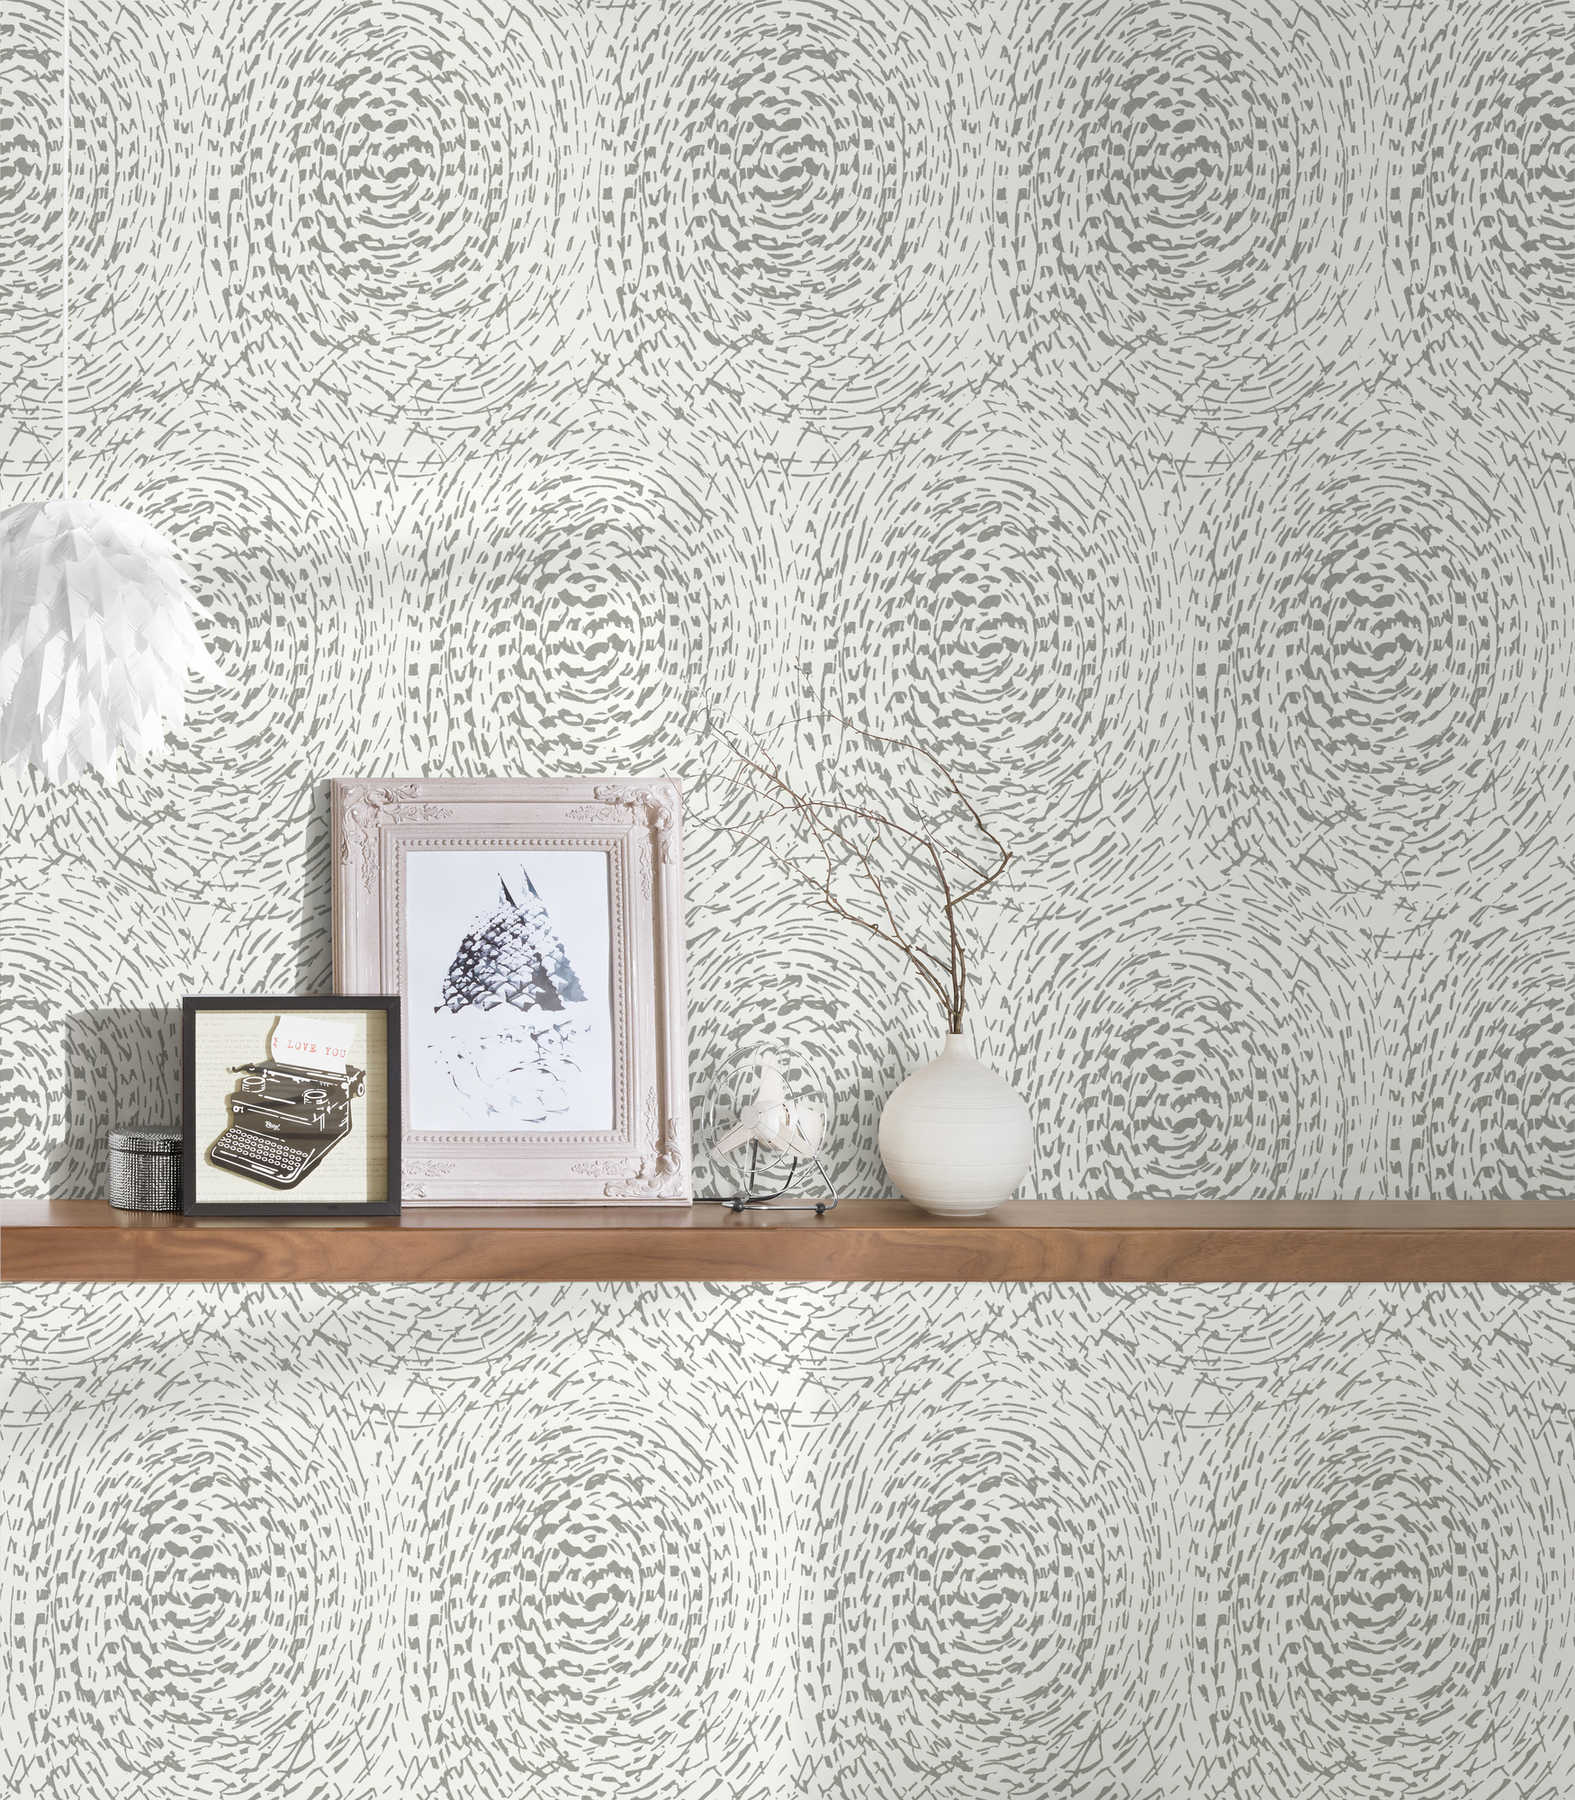             Tapete Ethno Design mit Metallic Farbe & Strukturdesign – Silber, Weiß
        